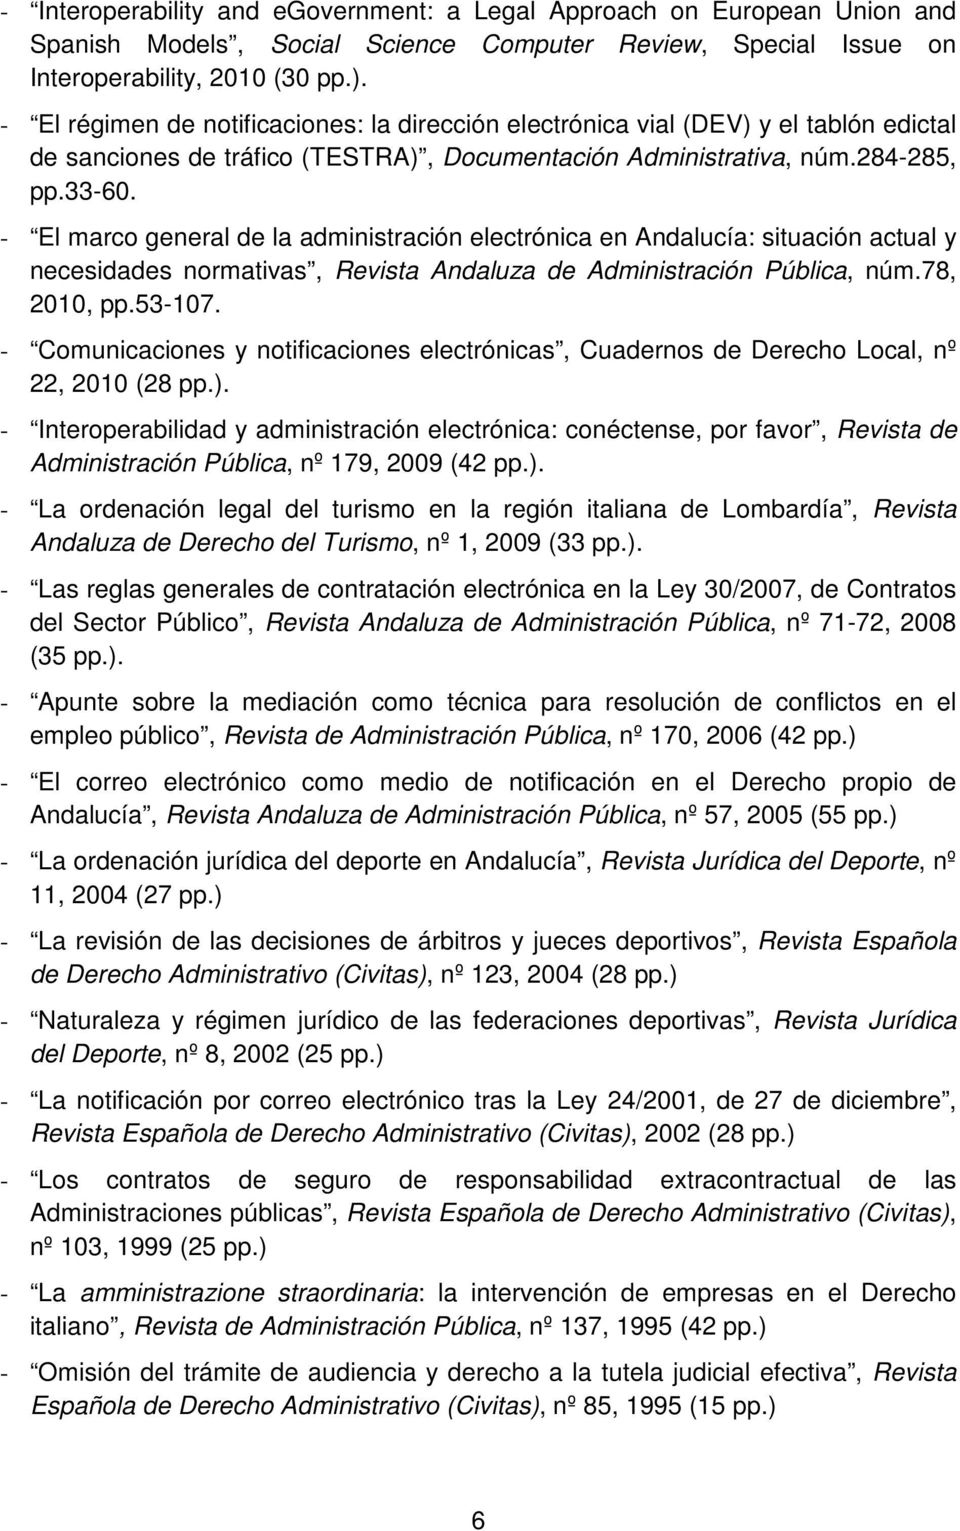 - El marco general de la administración electrónica en Andalucía: situación actual y necesidades normativas, Revista Andaluza de Administración Pública, núm.78, 2010, pp.53-107.